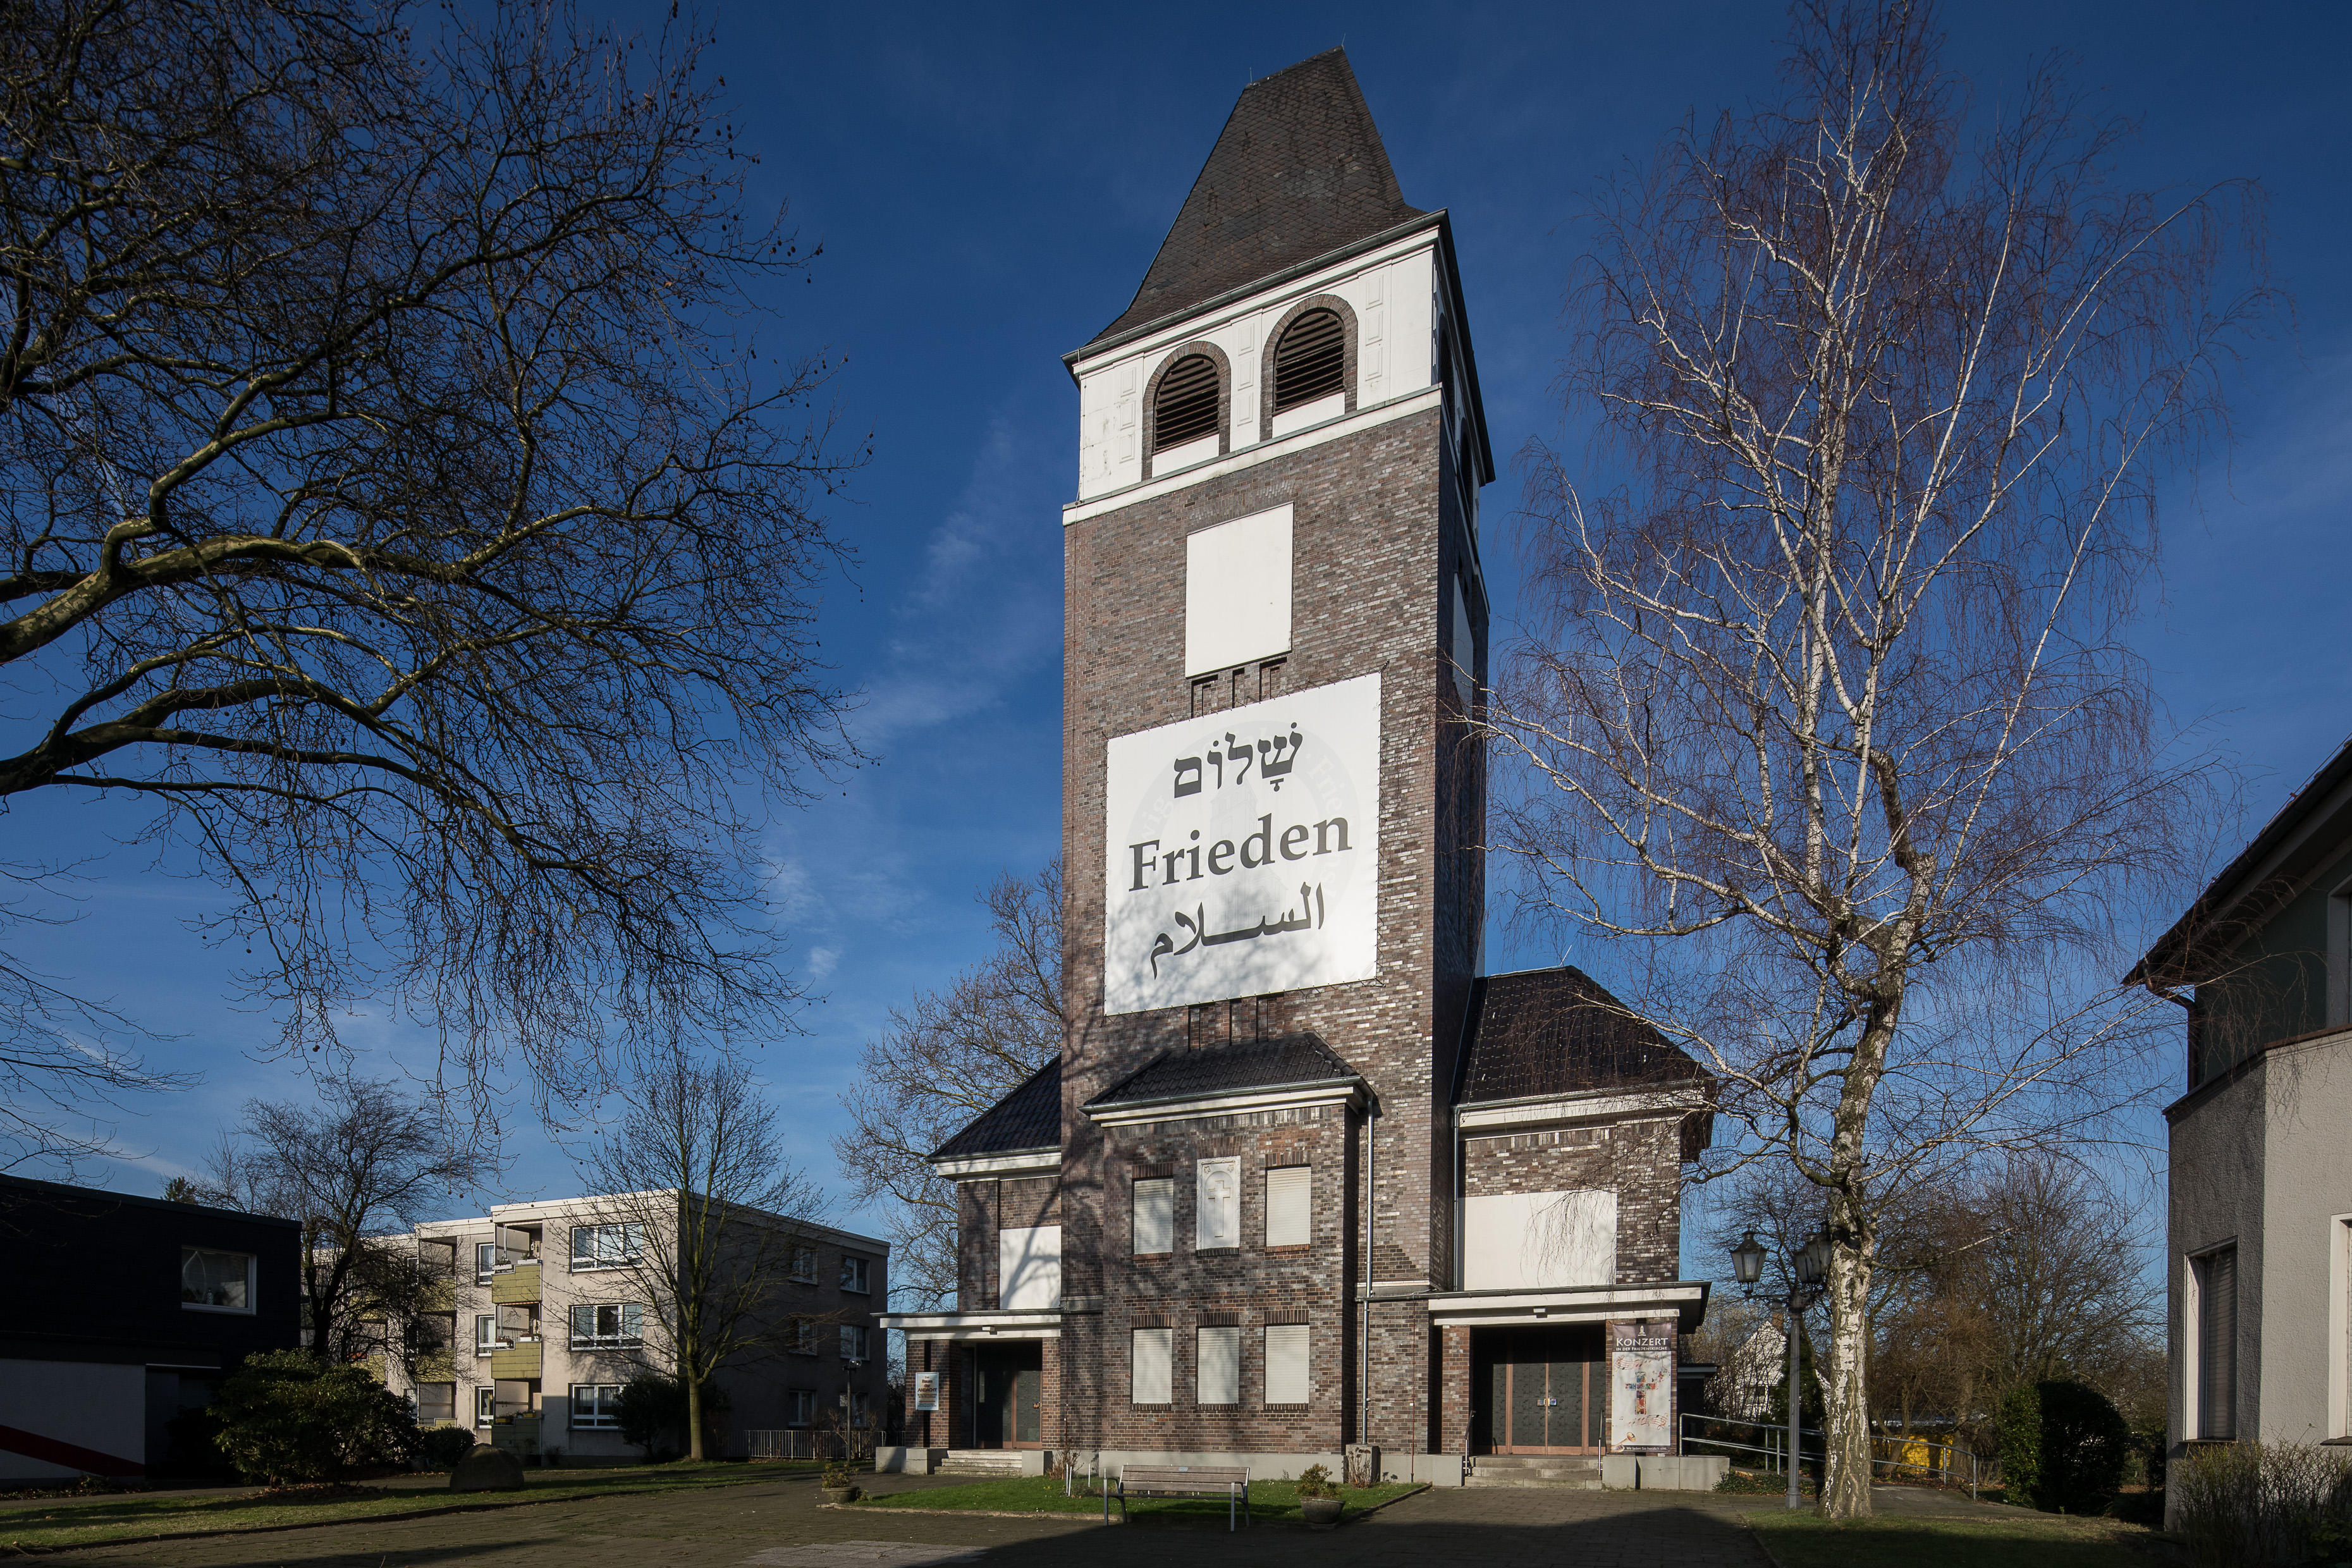 Bild der Friedenskirche - Evangelische Kirchengemeinde Dellwig-Frintrop-Gerschede